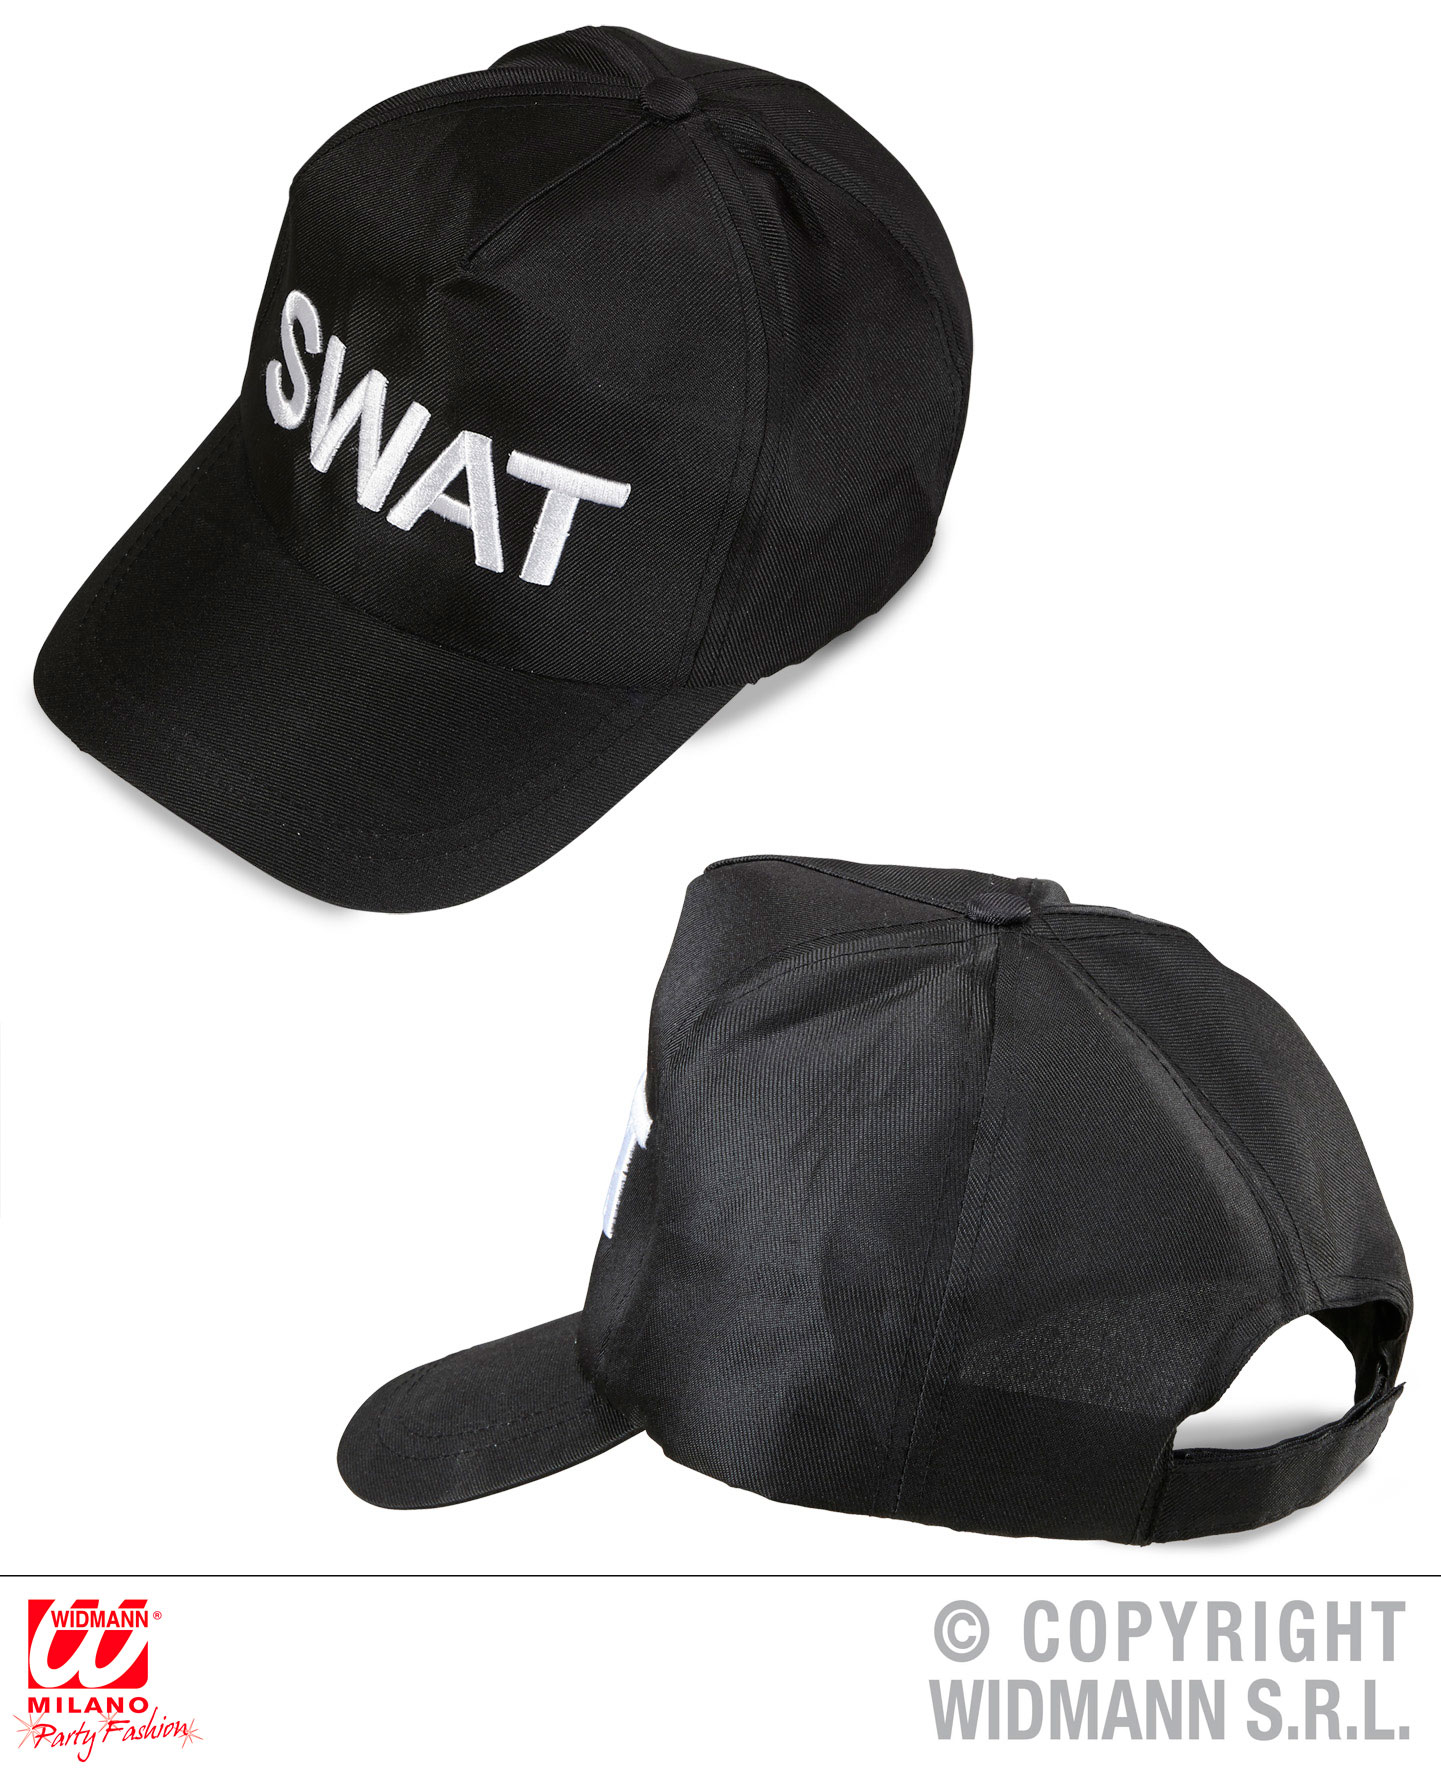 S. W. A. T. Weste - Männerweste - SWAT 